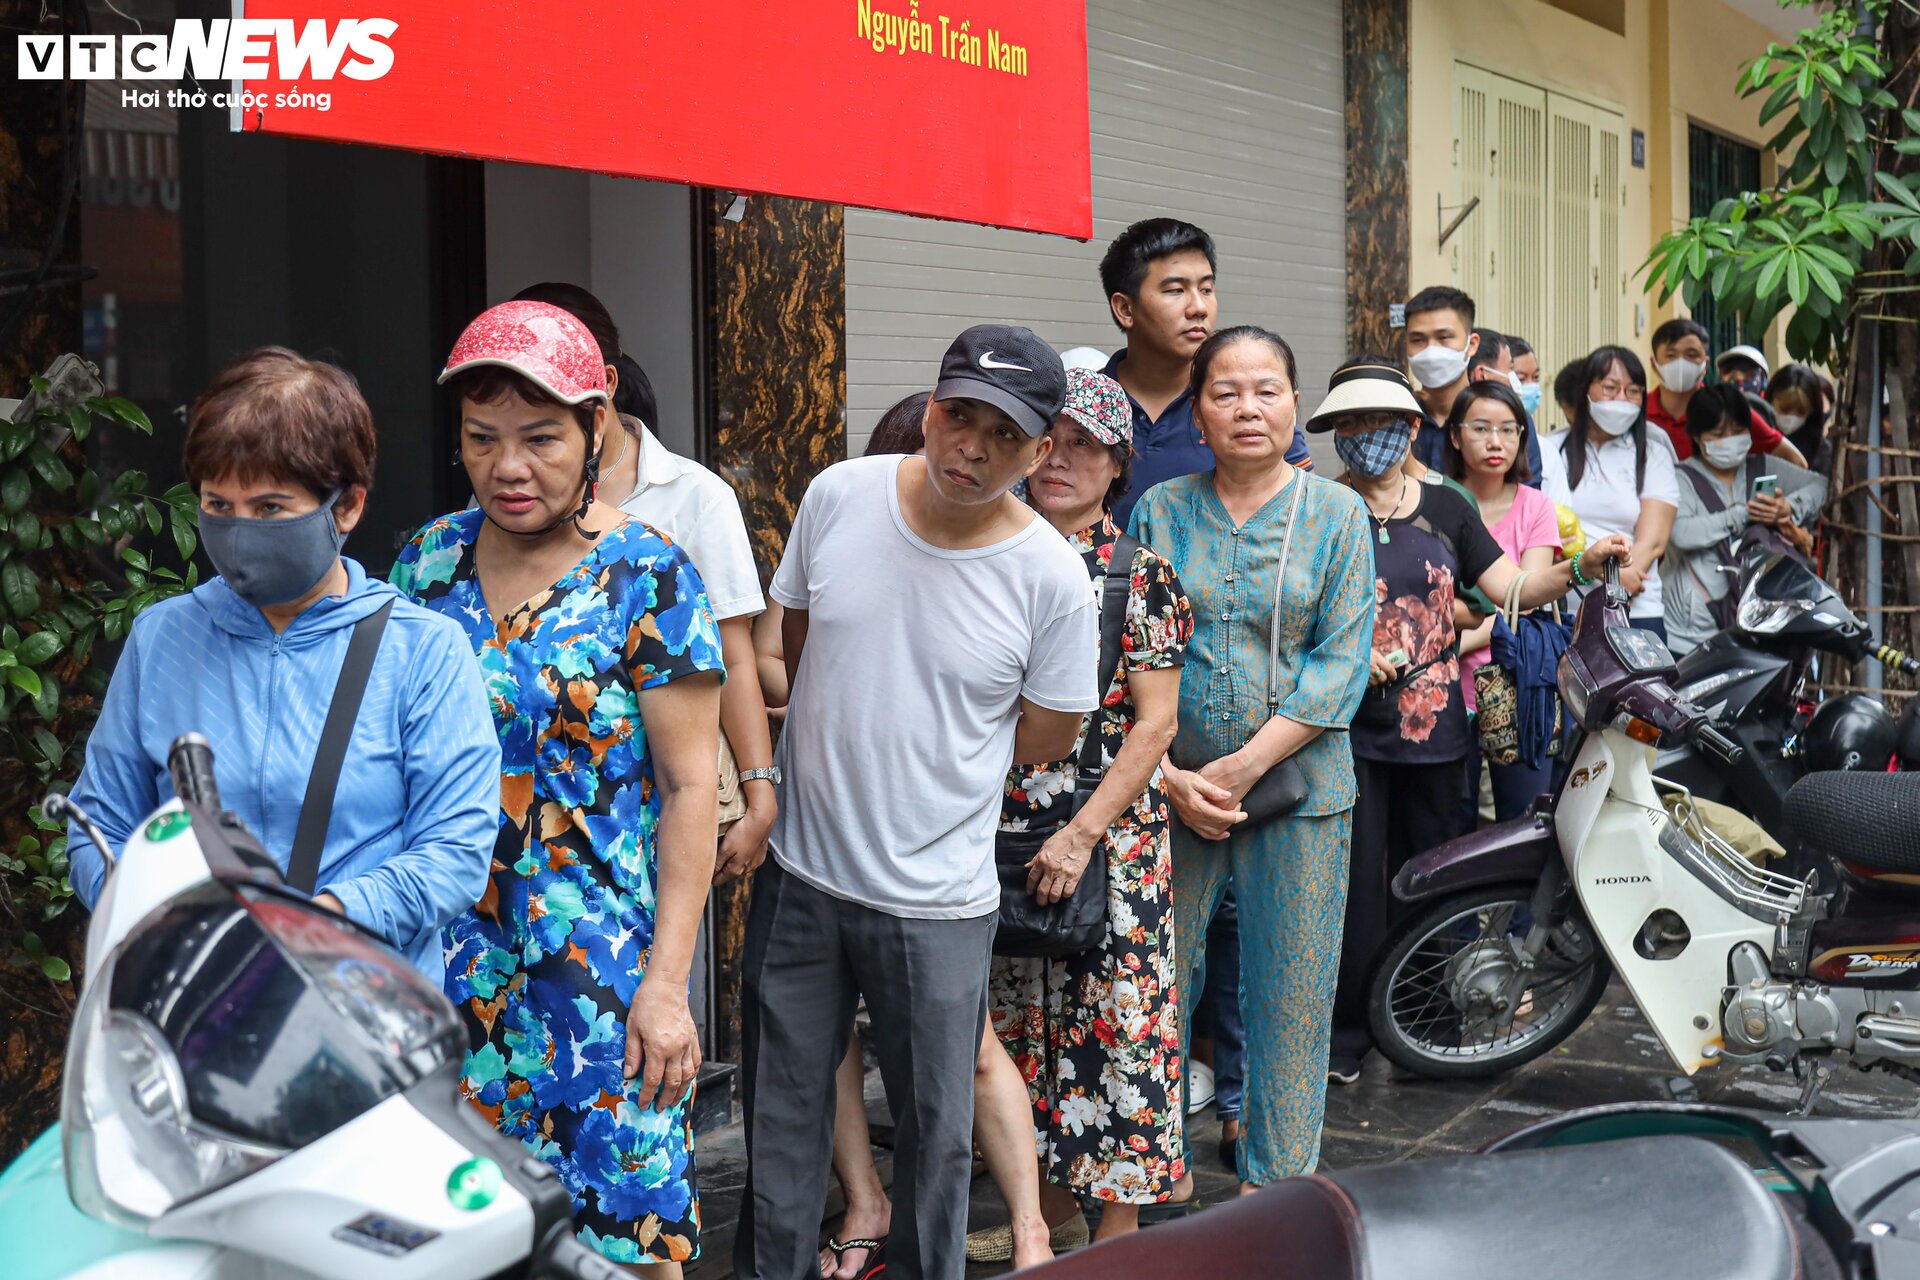 Hàng trăm người xếp hàng chờ mua bánh trung thu ở Hà Nội - 10